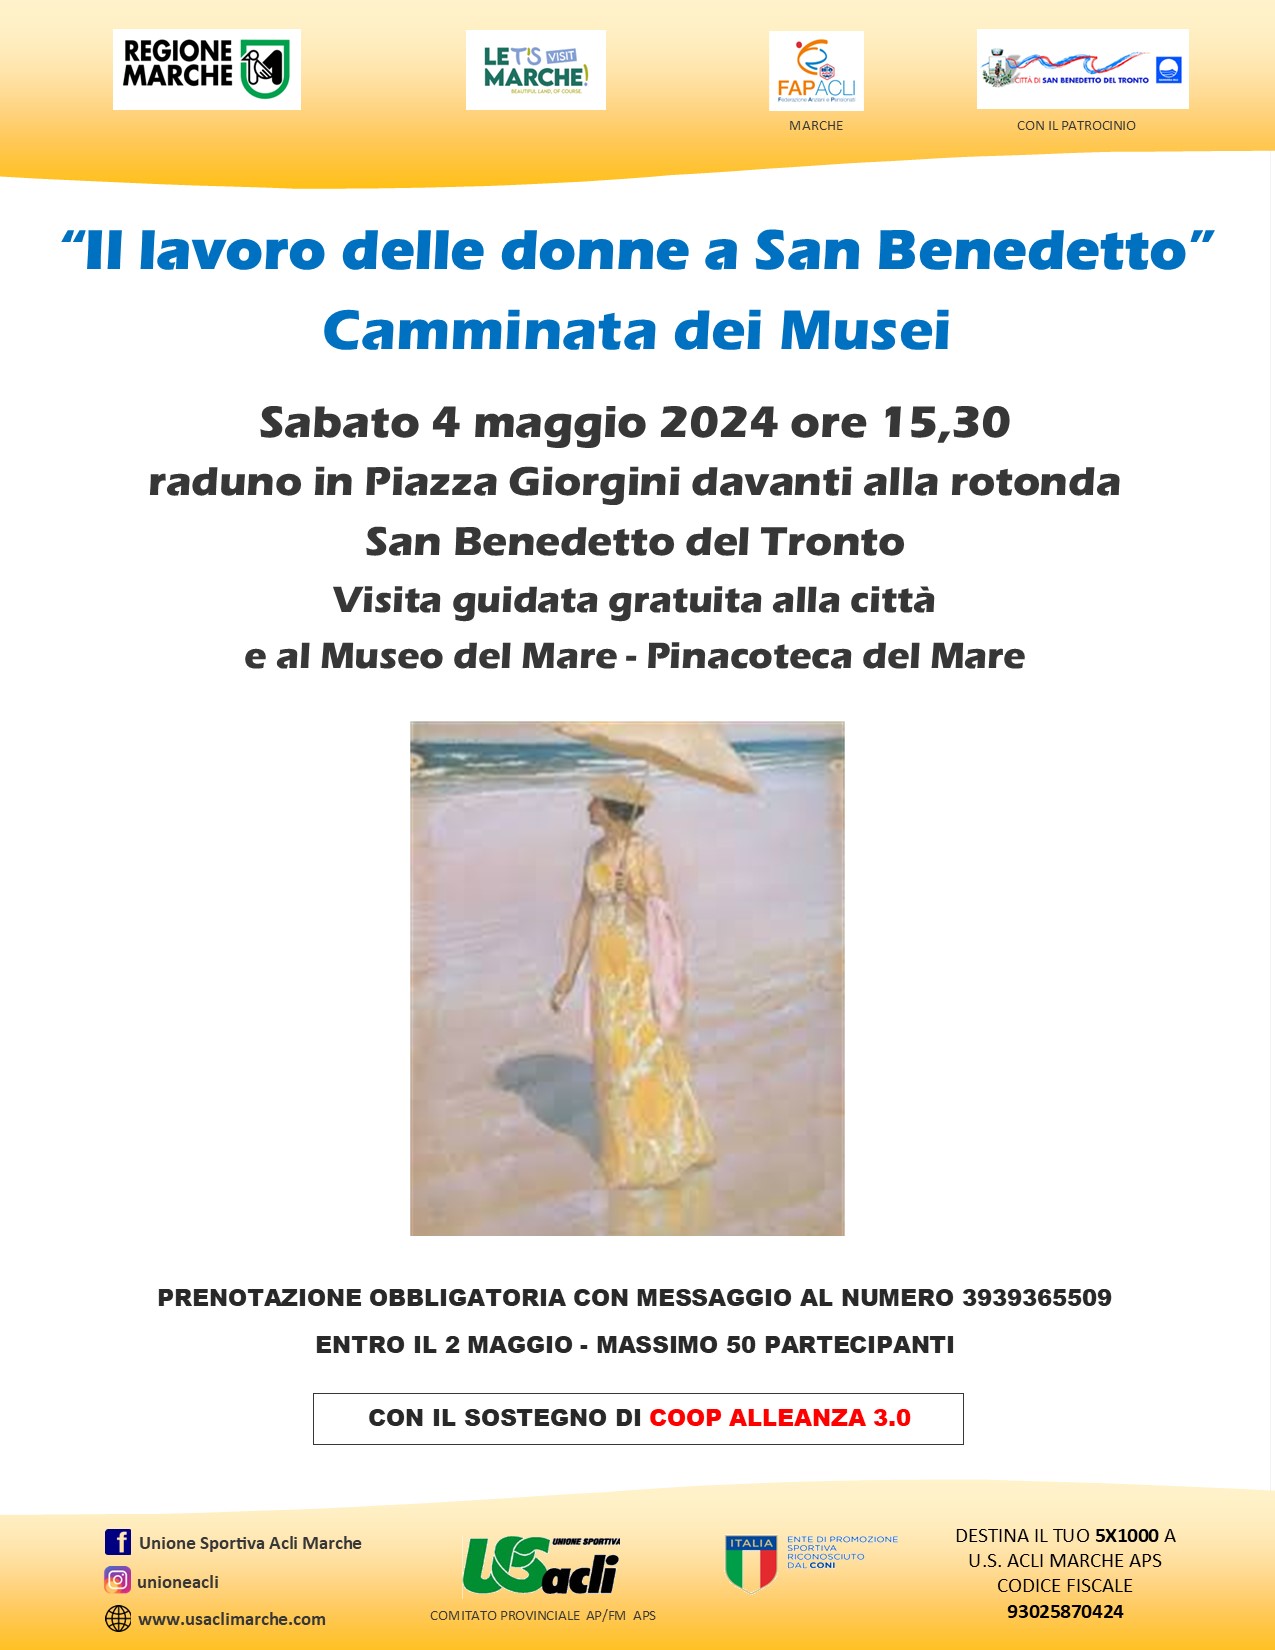 "Camminata dei musei"
Per raccontare il lavoro delle donne San Benedetto del Tronto

